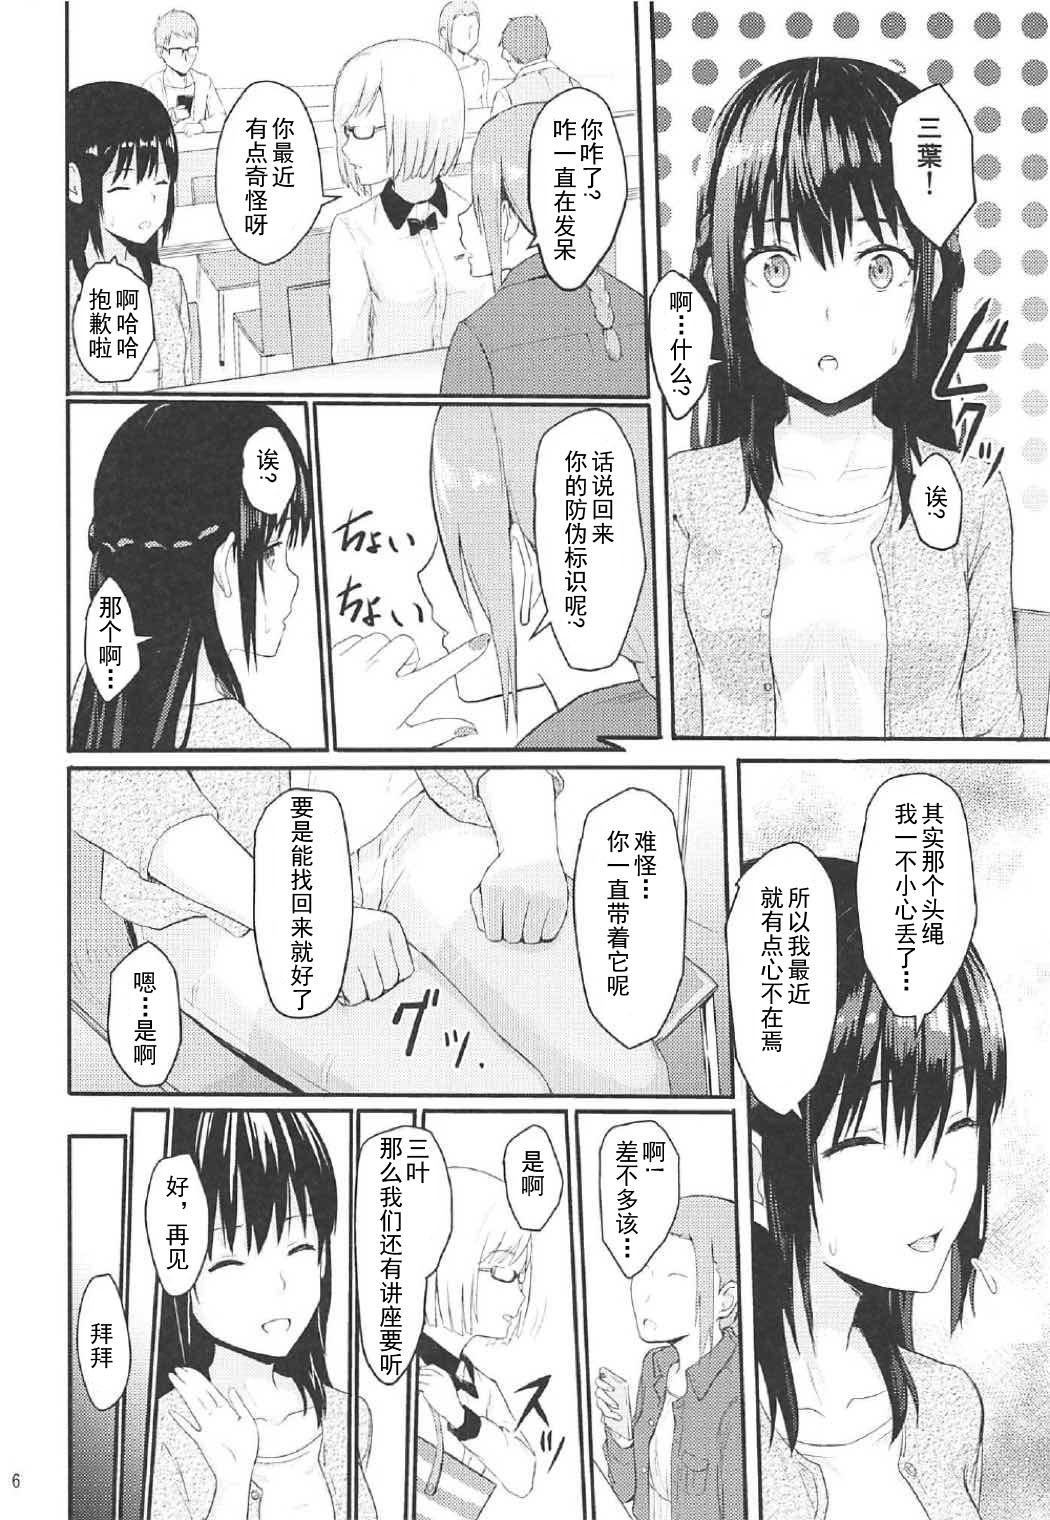 Bailando Mitsuha - Kimi no na wa. Titty Fuck - Page 5